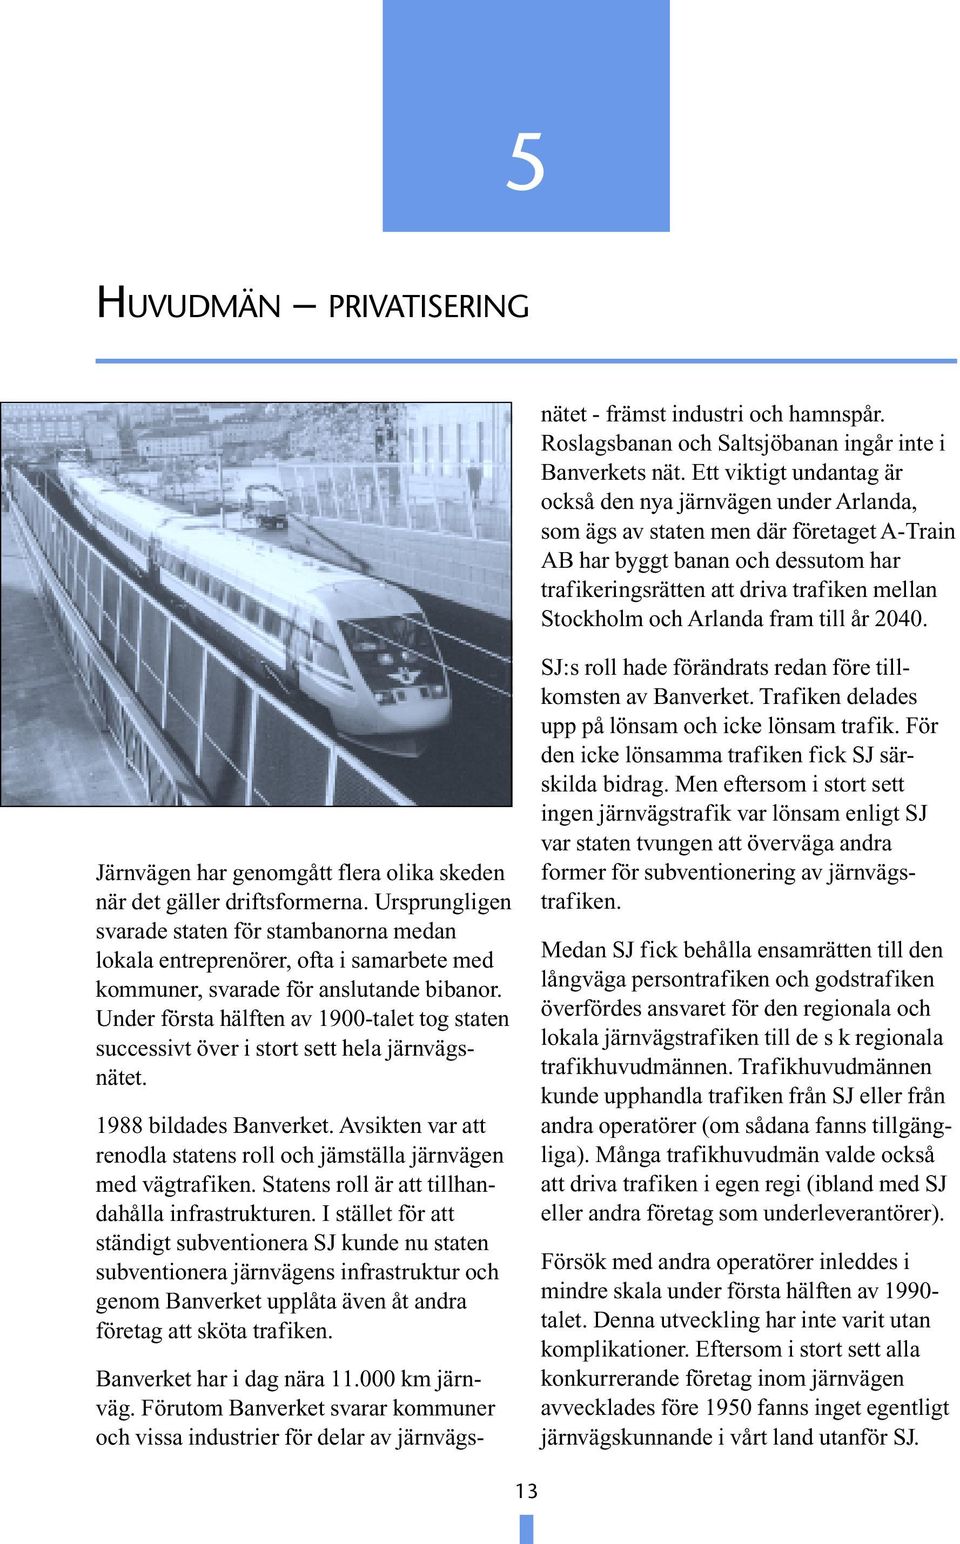 Ett viktigt undantag är också den nya järnvägen under Arlanda, som ägs av staten men där företaget A-Train AB har byggt banan och dessutom har trafikeringsrätten att driva trafiken mellan Stockholm